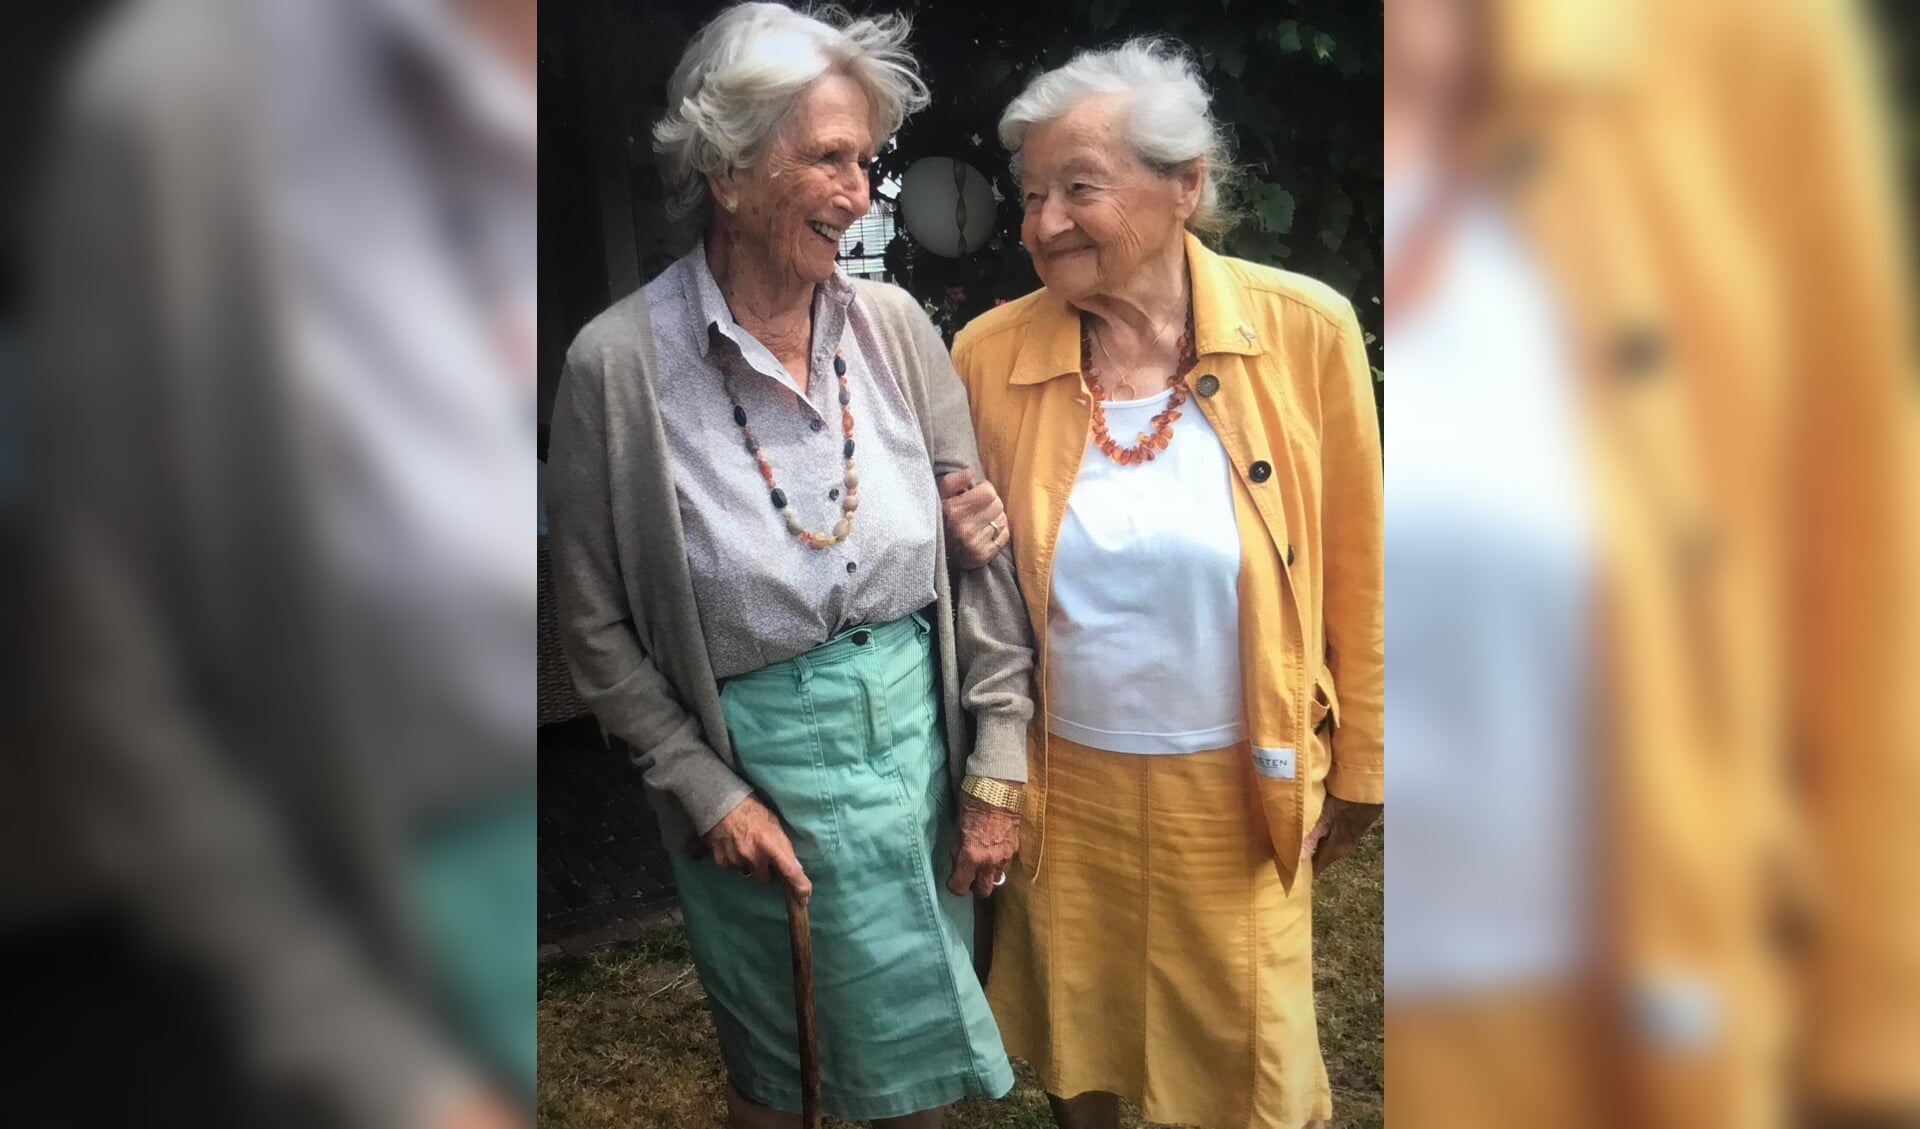 Mevrouw Sillem (r) bezoekt binnenkort haar vriendin die 95 jaar wordt (deze foto is in 2018 gemaakt).